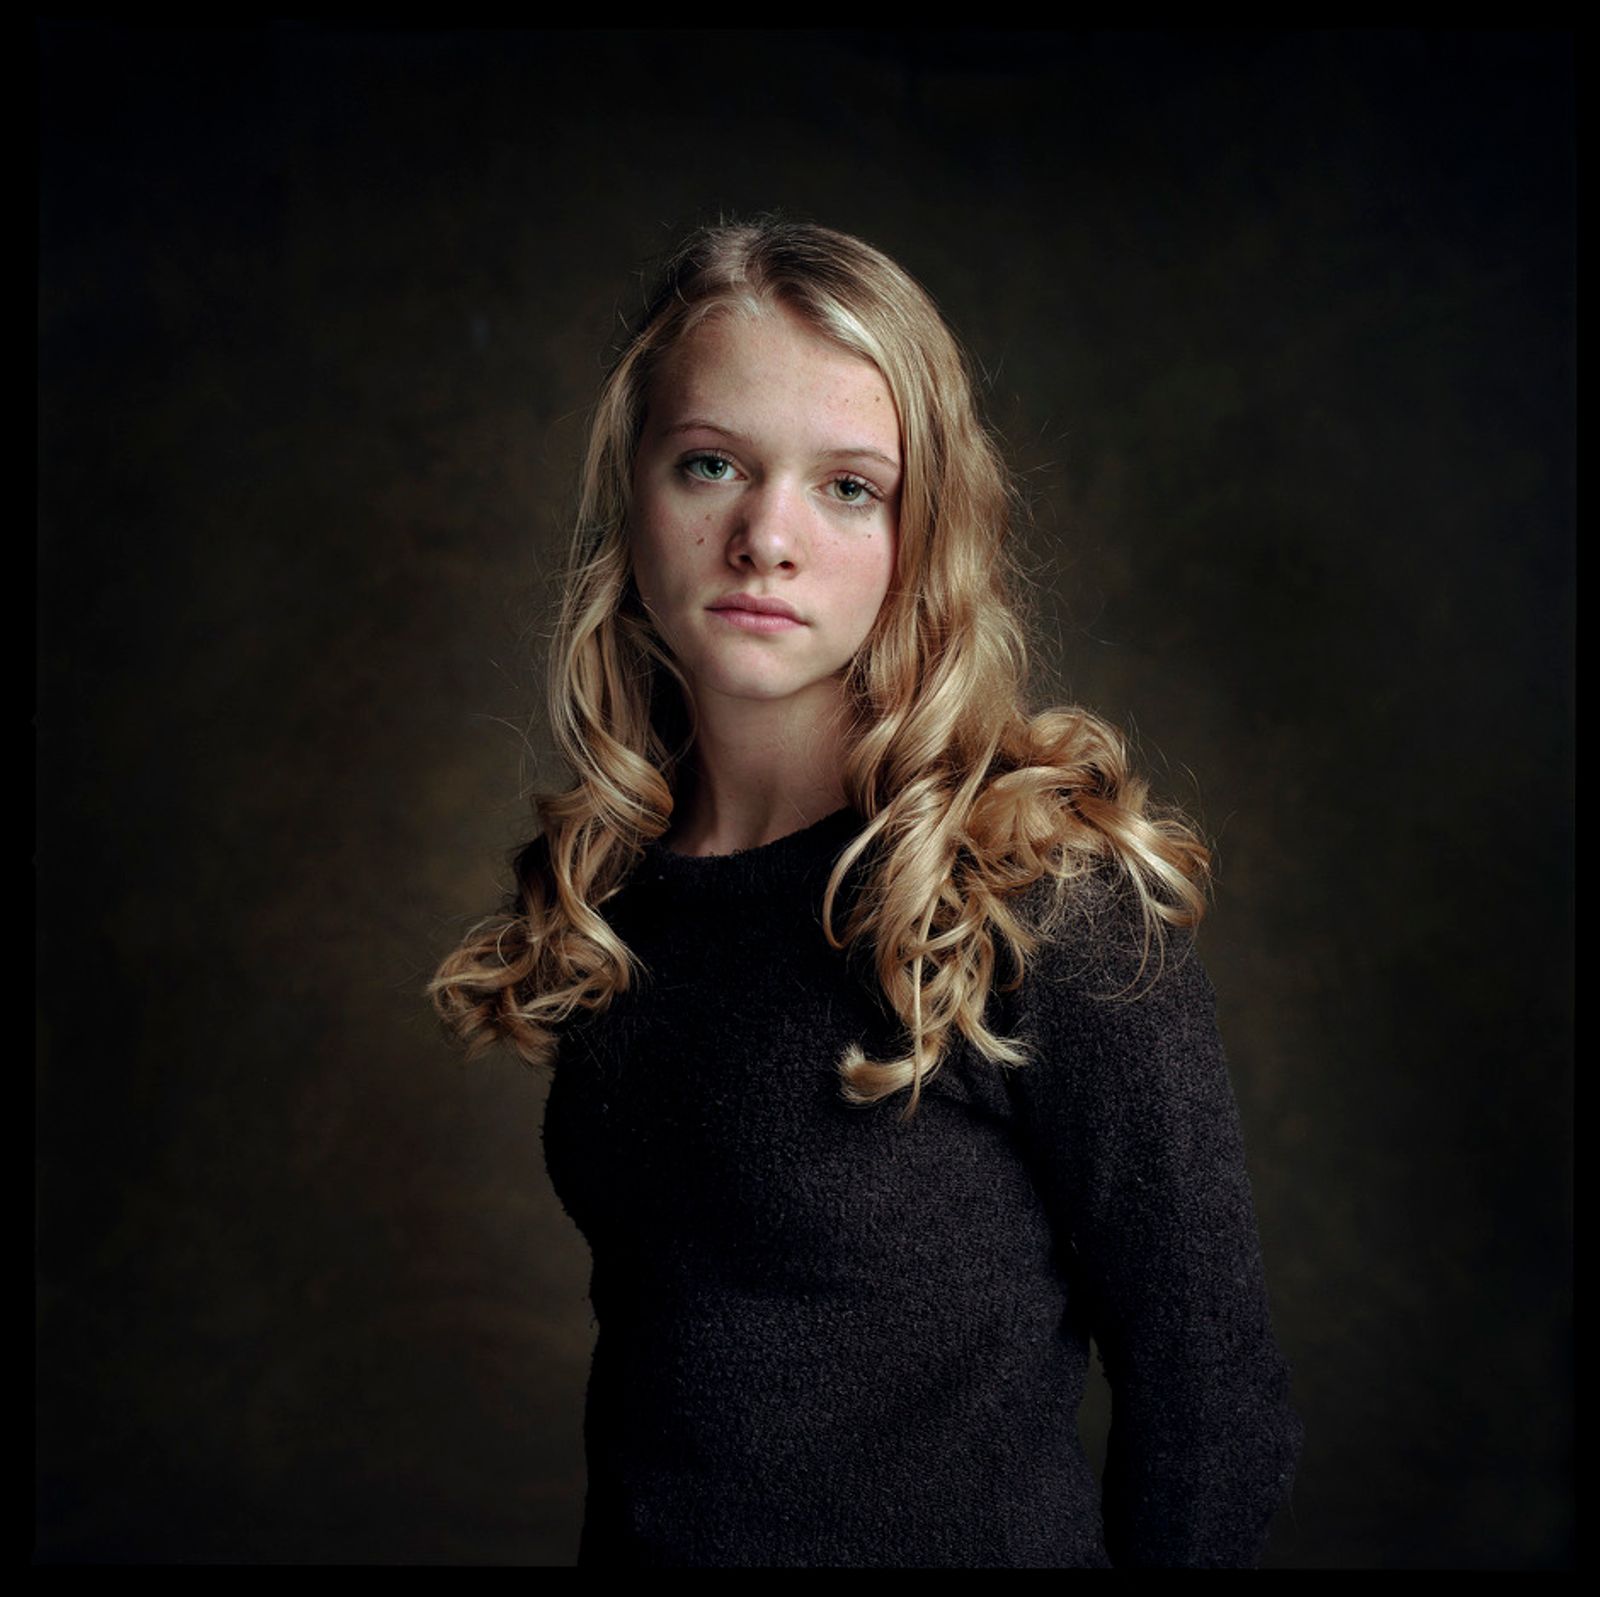 © Susanne Middelberg - Brechje 14 years old